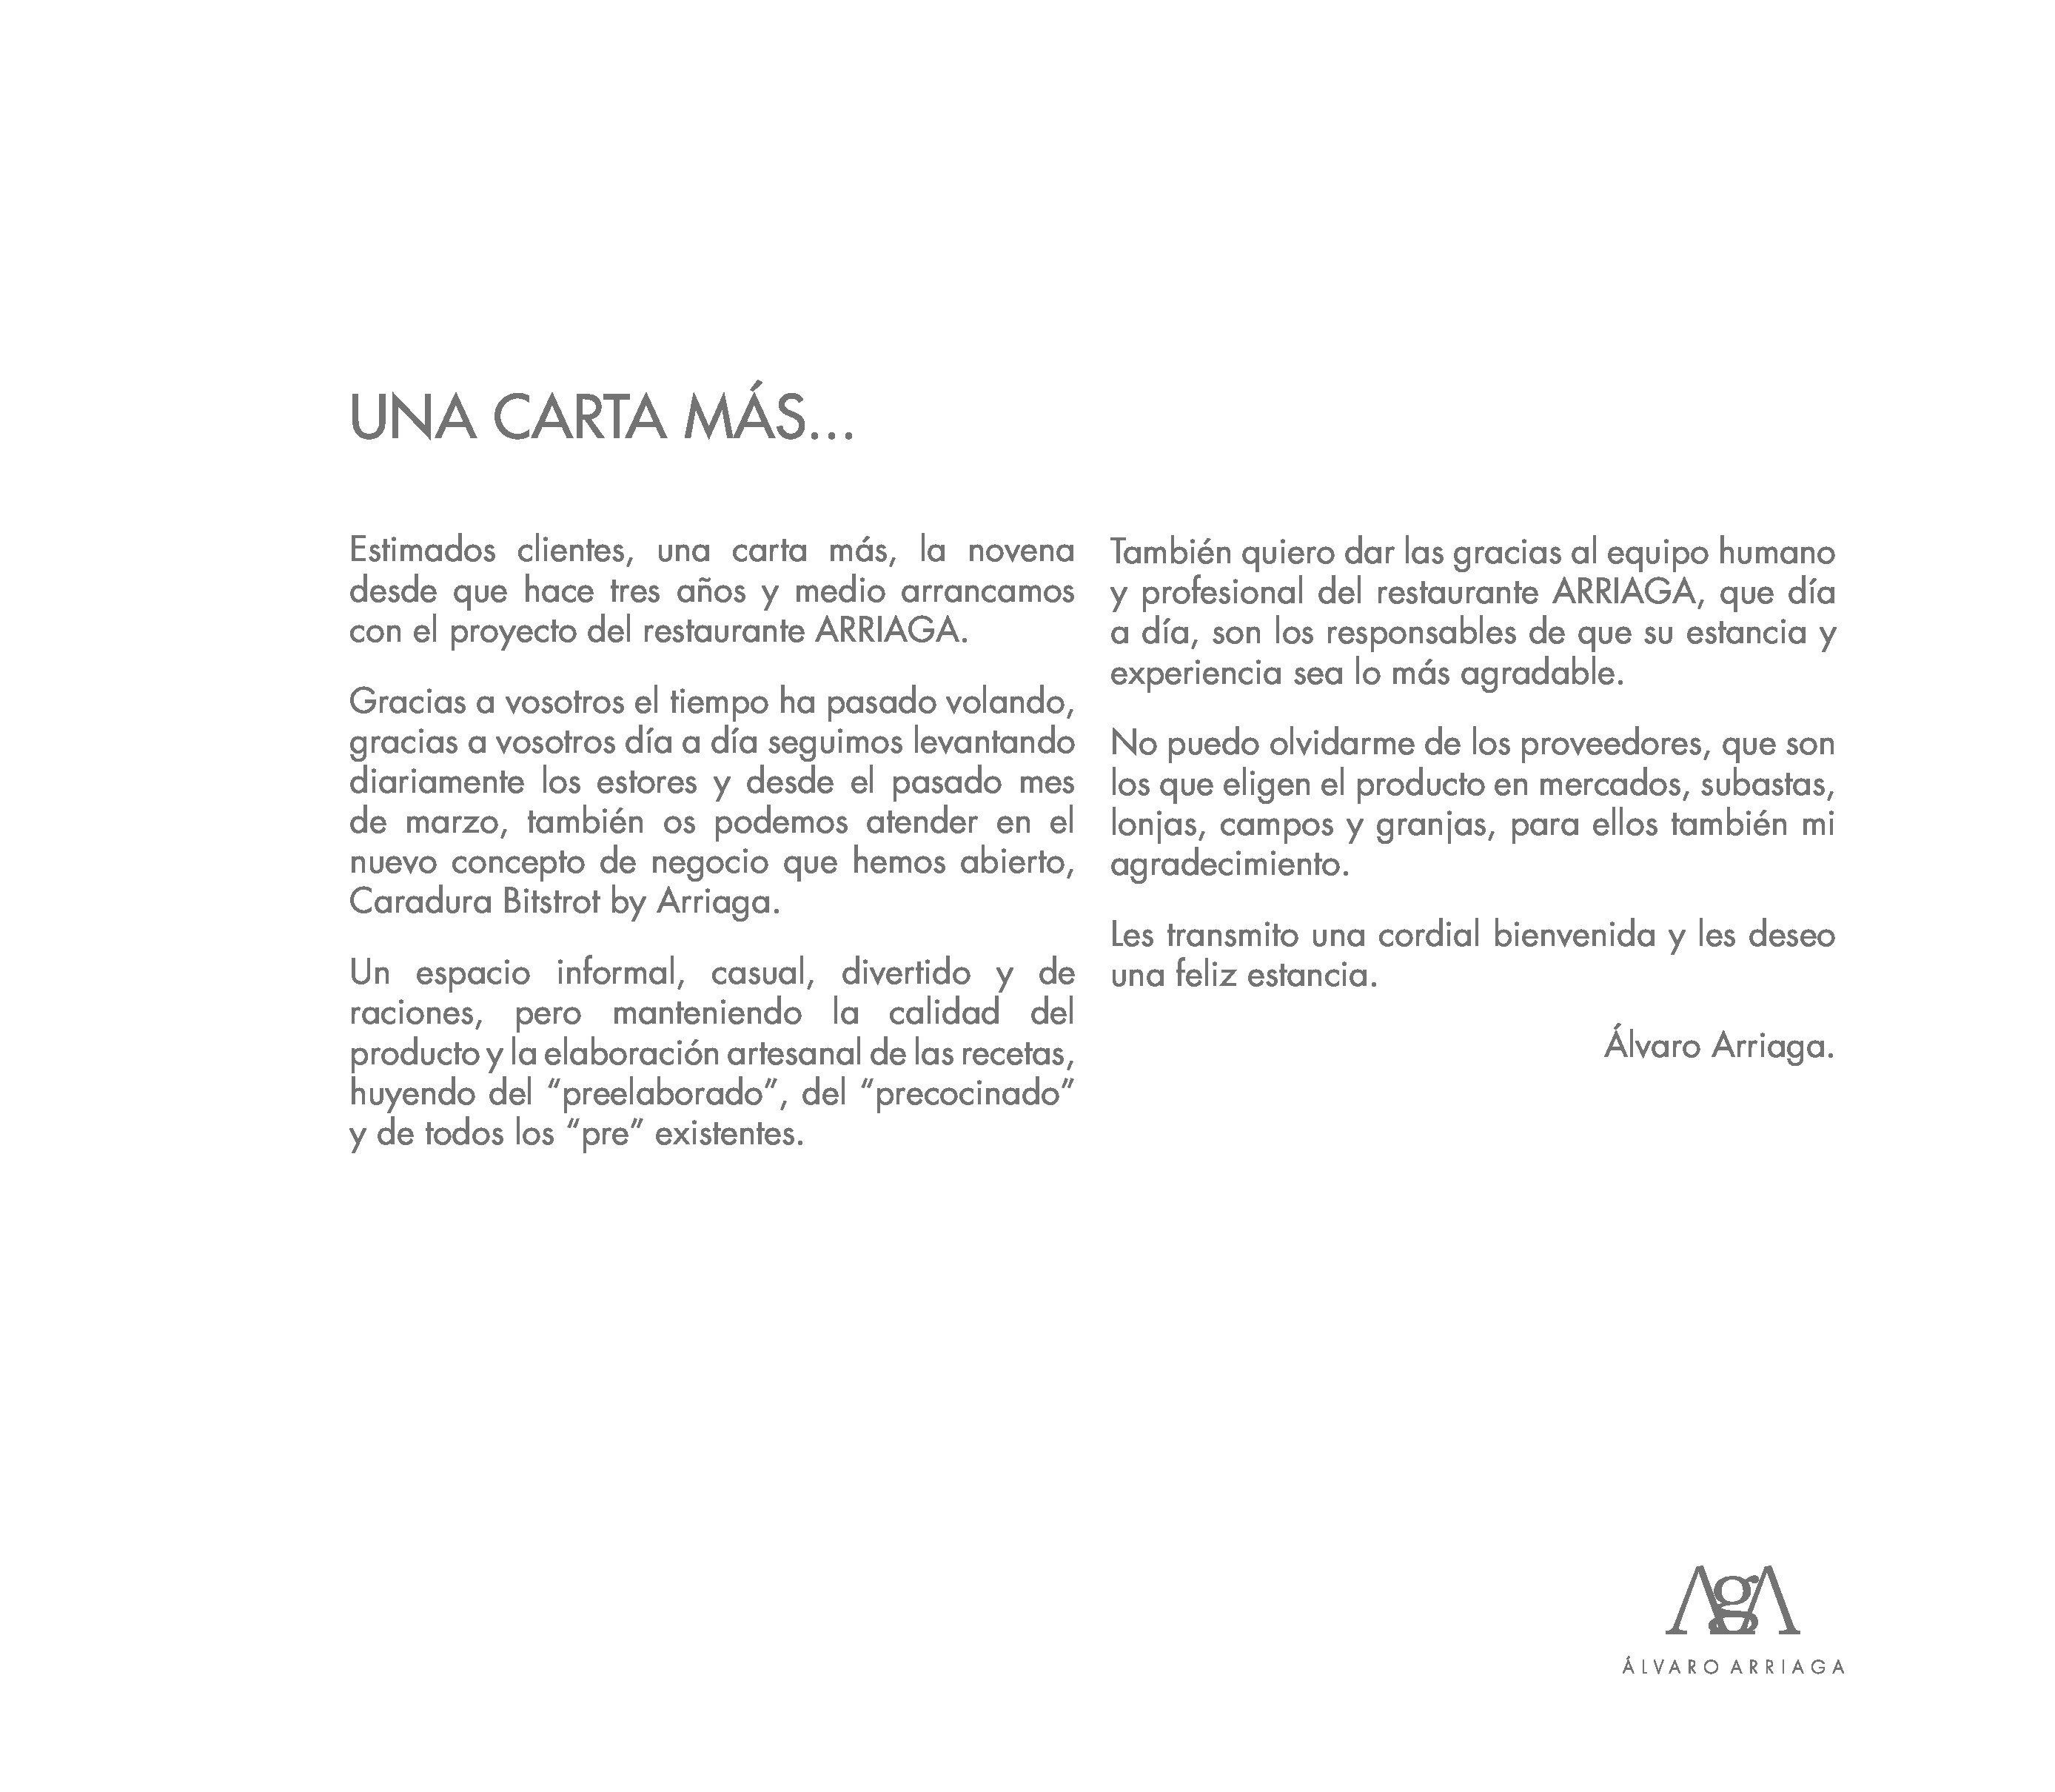 Alvaro Arriaga Carta